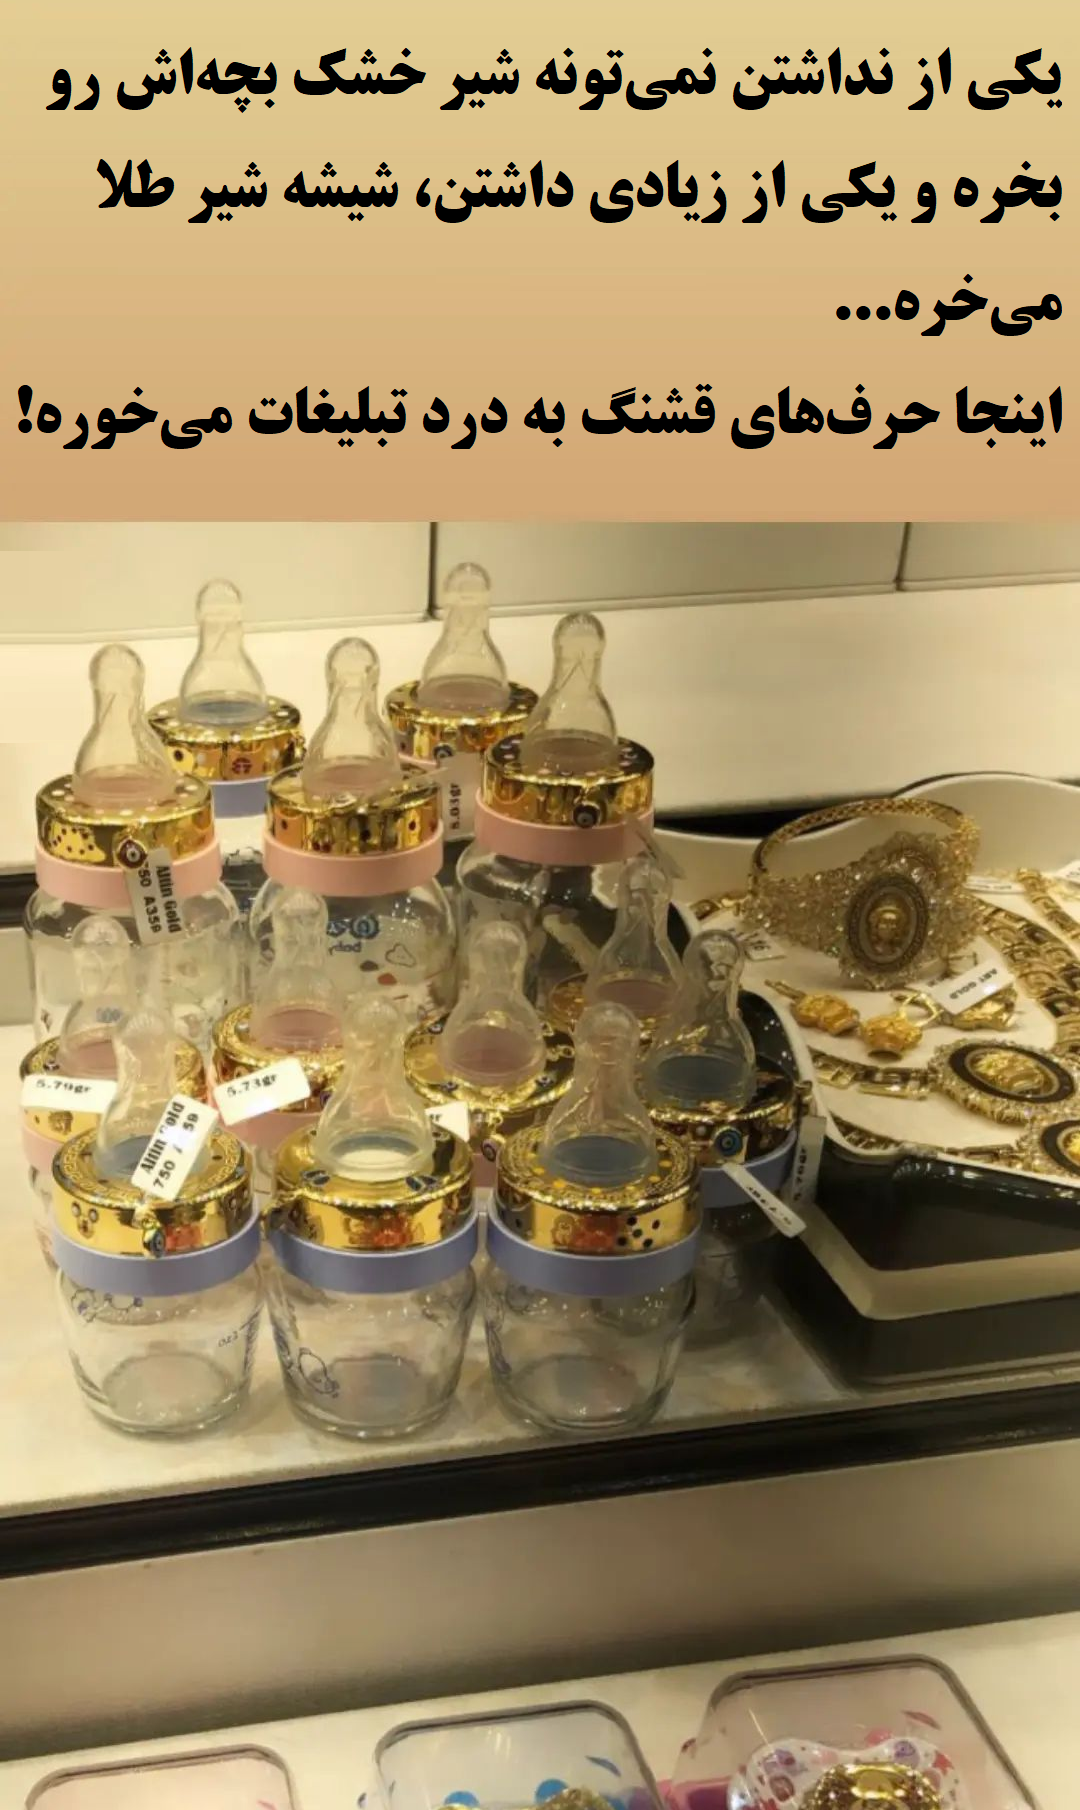 فروش شیشه شیر طلا در بازار ایران + عکس